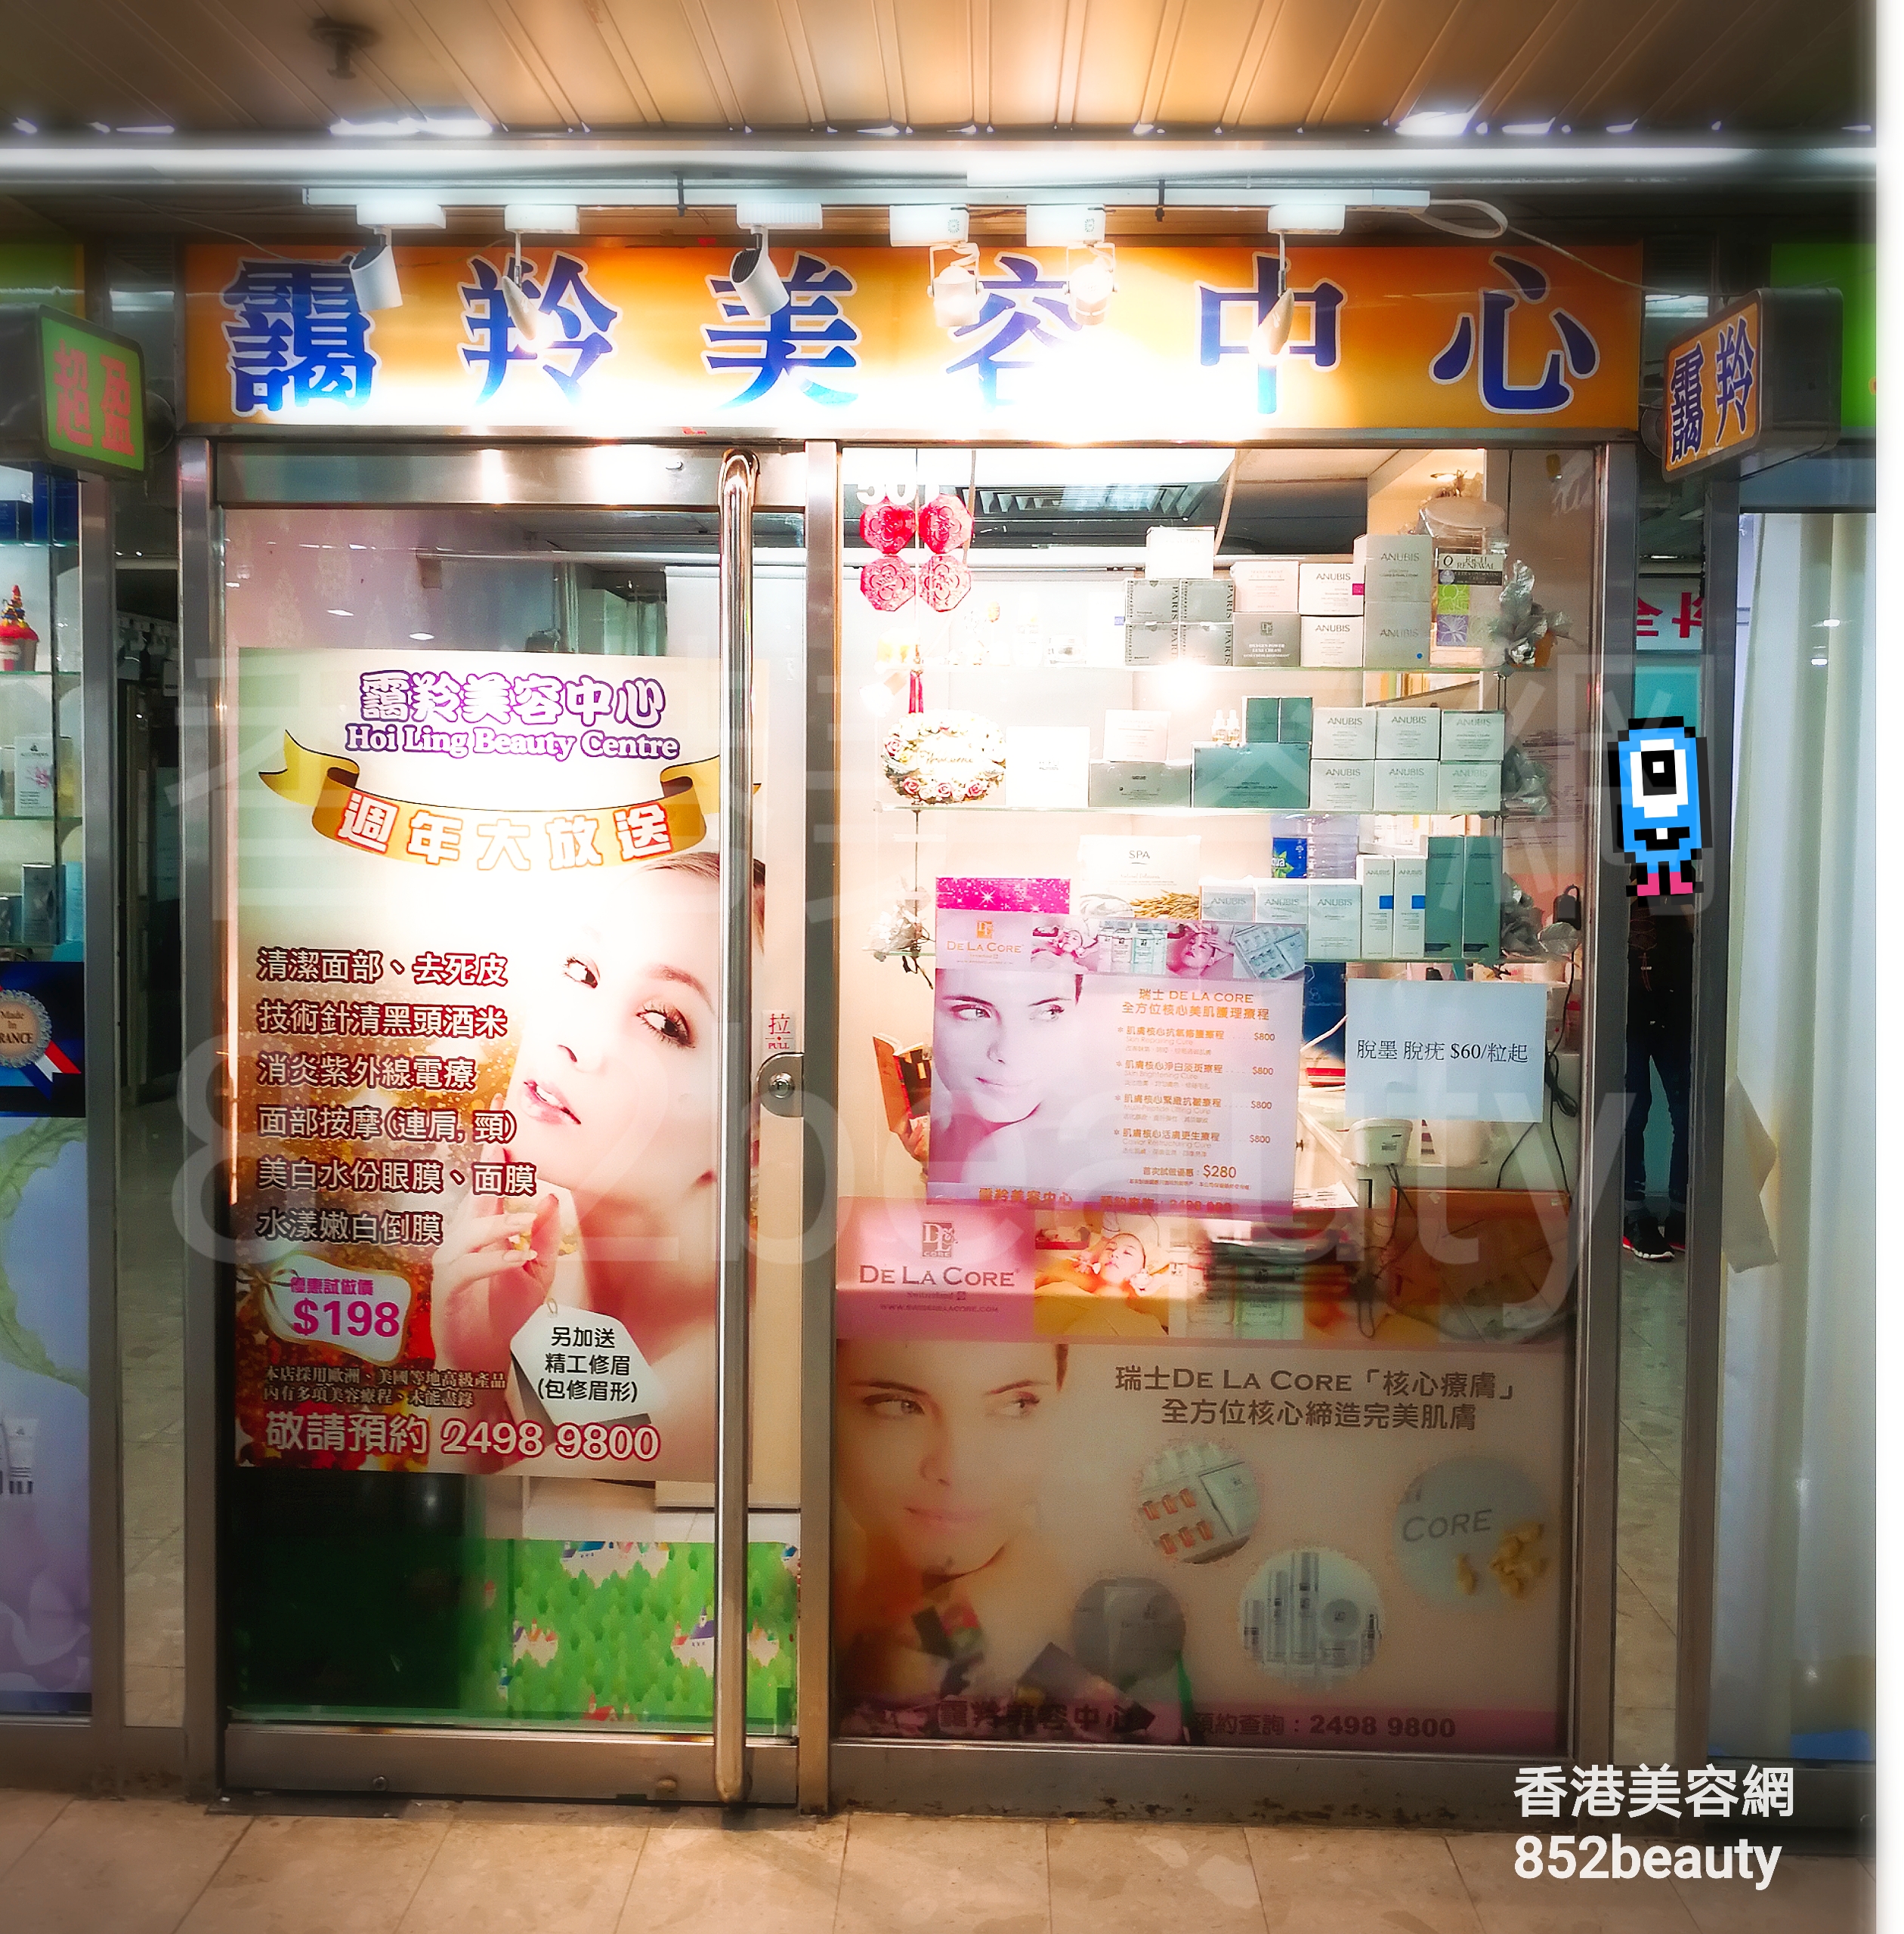 香港美容網 Hong Kong Beauty Salon 美容院 / 美容師: 靄羚美容中心